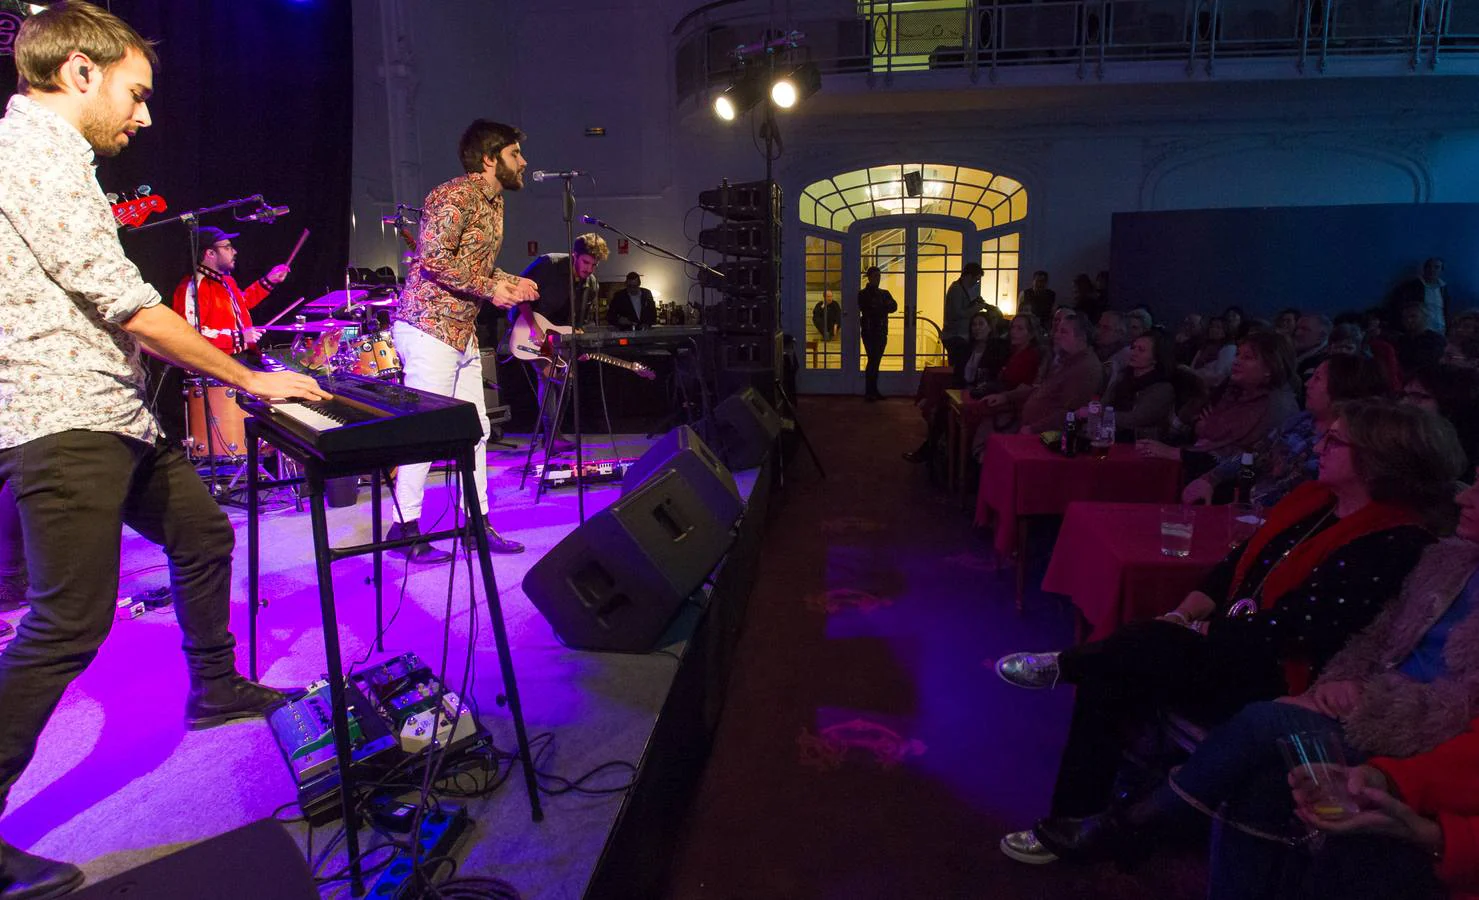 Floridablanca, Mr. Kilombo, Lou Cornago y Joana Serrat protagonizaron los conciertos diurnos de la primera jornada de Actual.